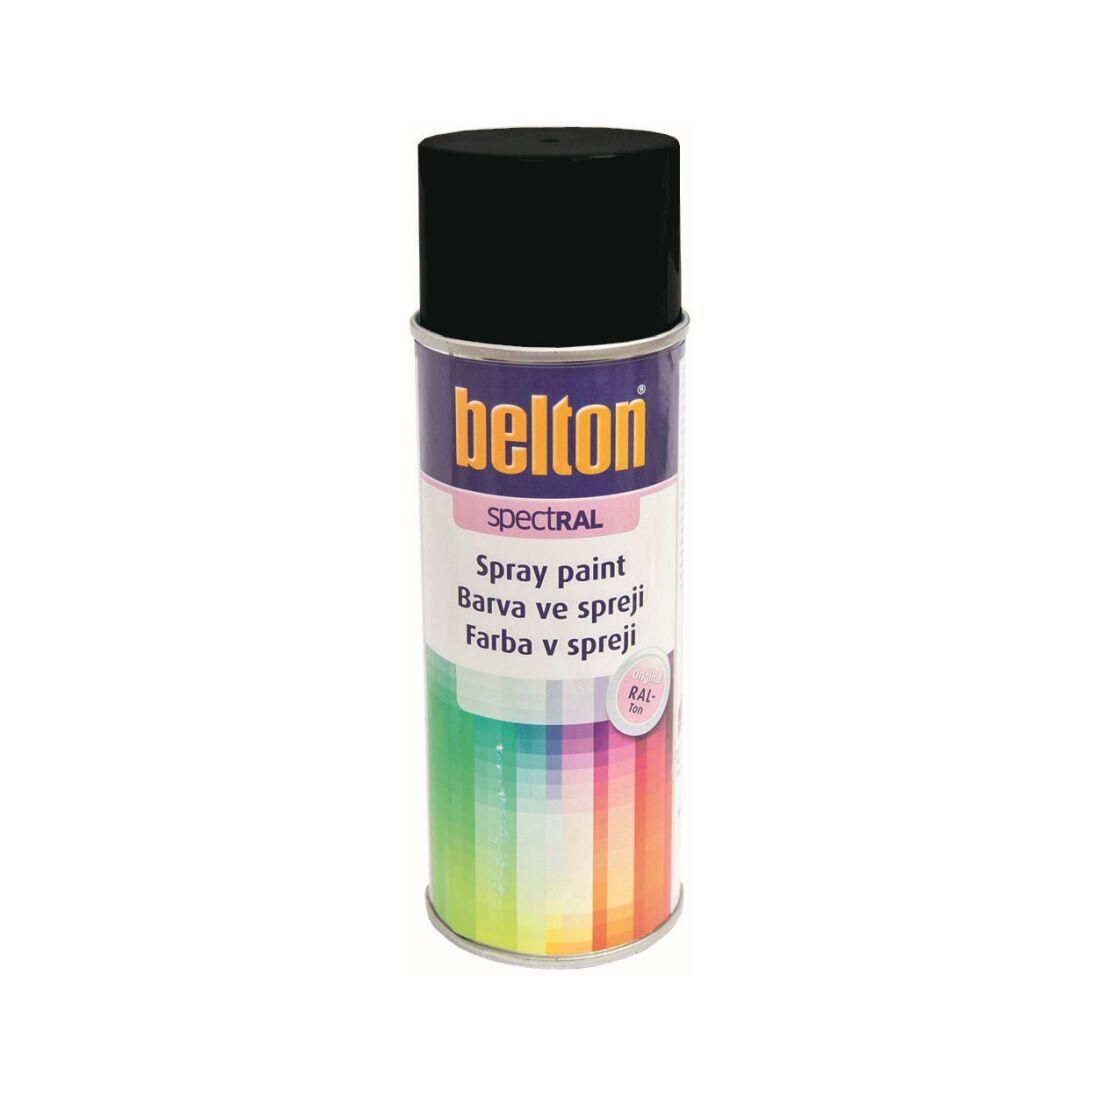 barva ve spreji BELTON RAL 9005pl, 400ml ČER pololesklá 0.31 Kg MAXMIX Sklad14 825570 10